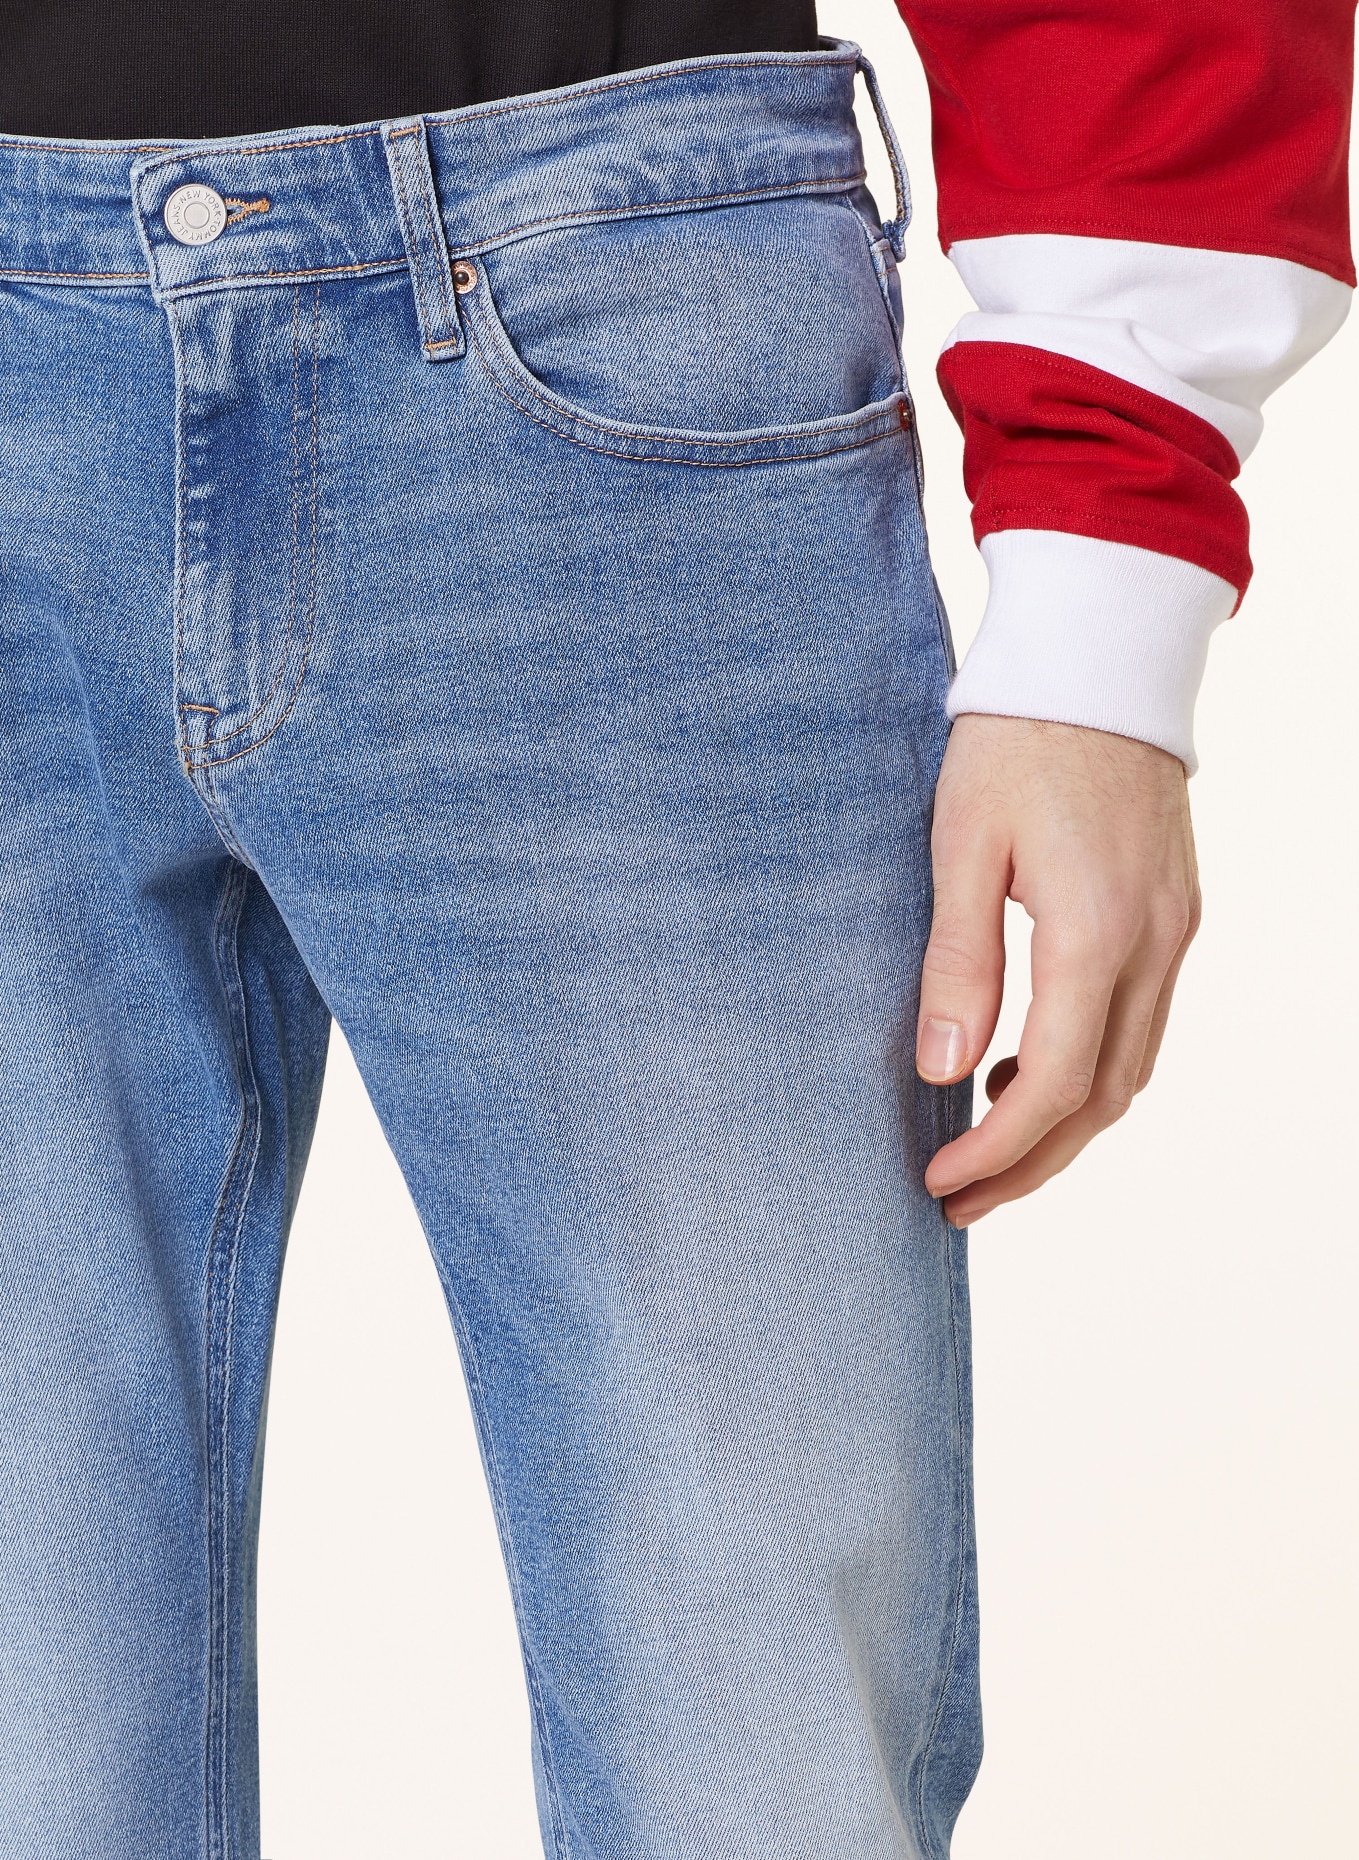 TOMMY JEANS Jeans SCANTON Slim Fit, Color: 1AB Denim Light (Image 5)